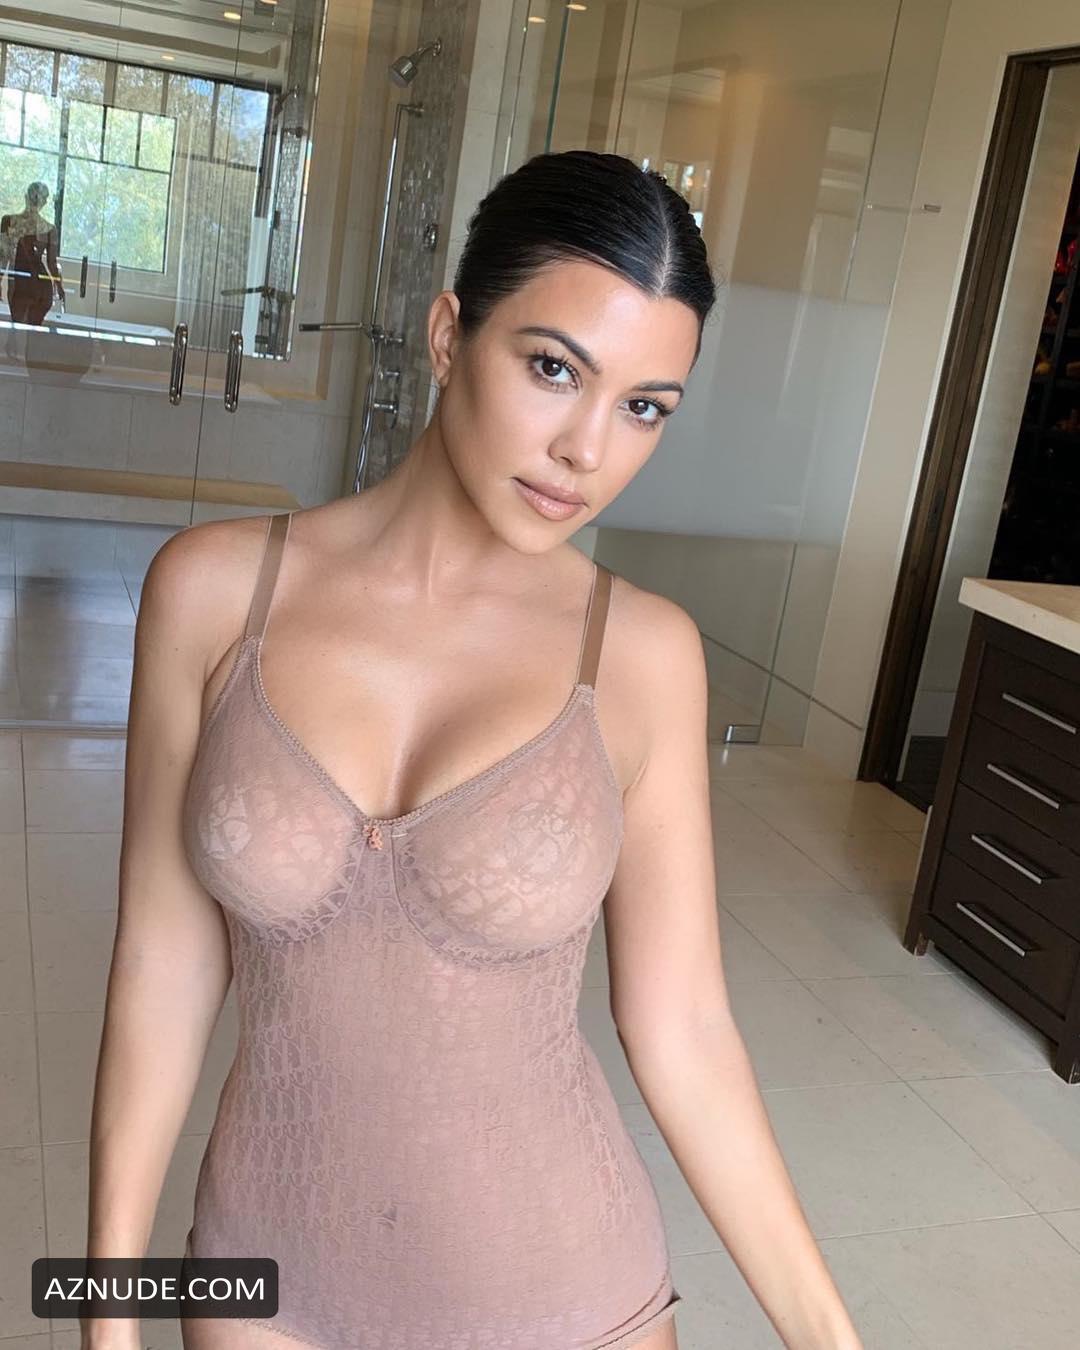 Kourtney Kardashian Nude And Sexy Photos For Her New Brand Poosh March April 2019 Aznude